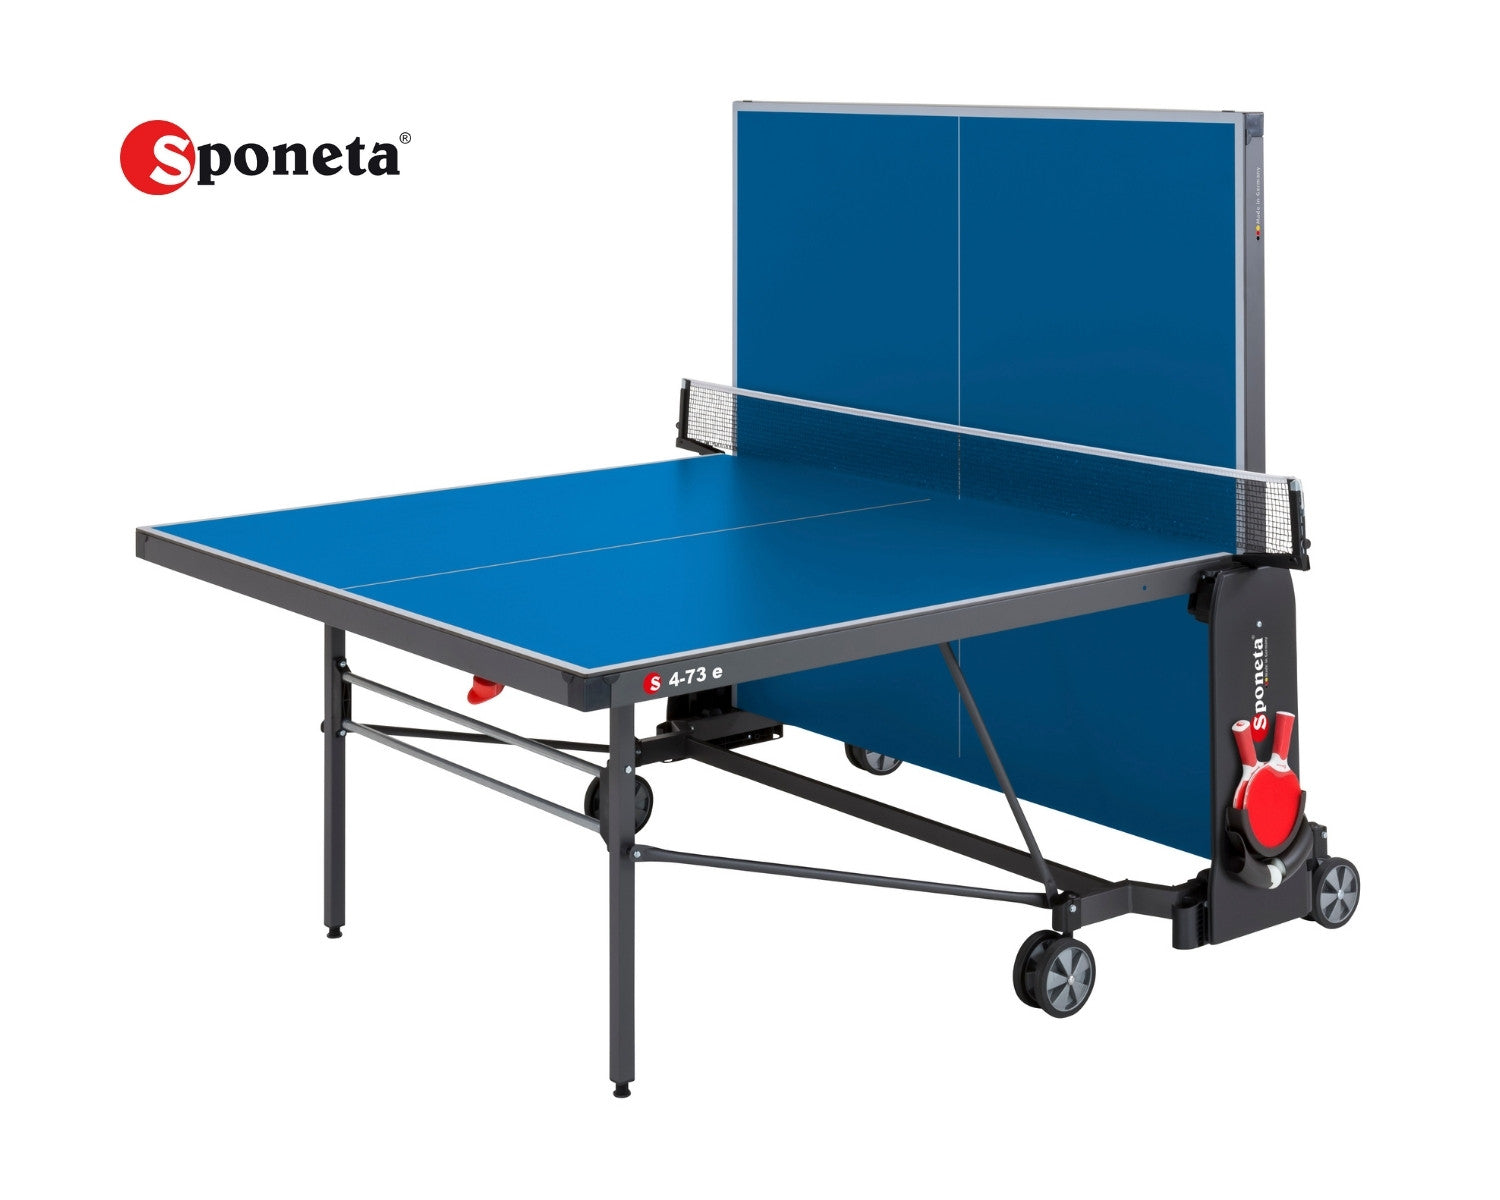 Sponeta Outdoor Tischtennistisch S 4-73 e